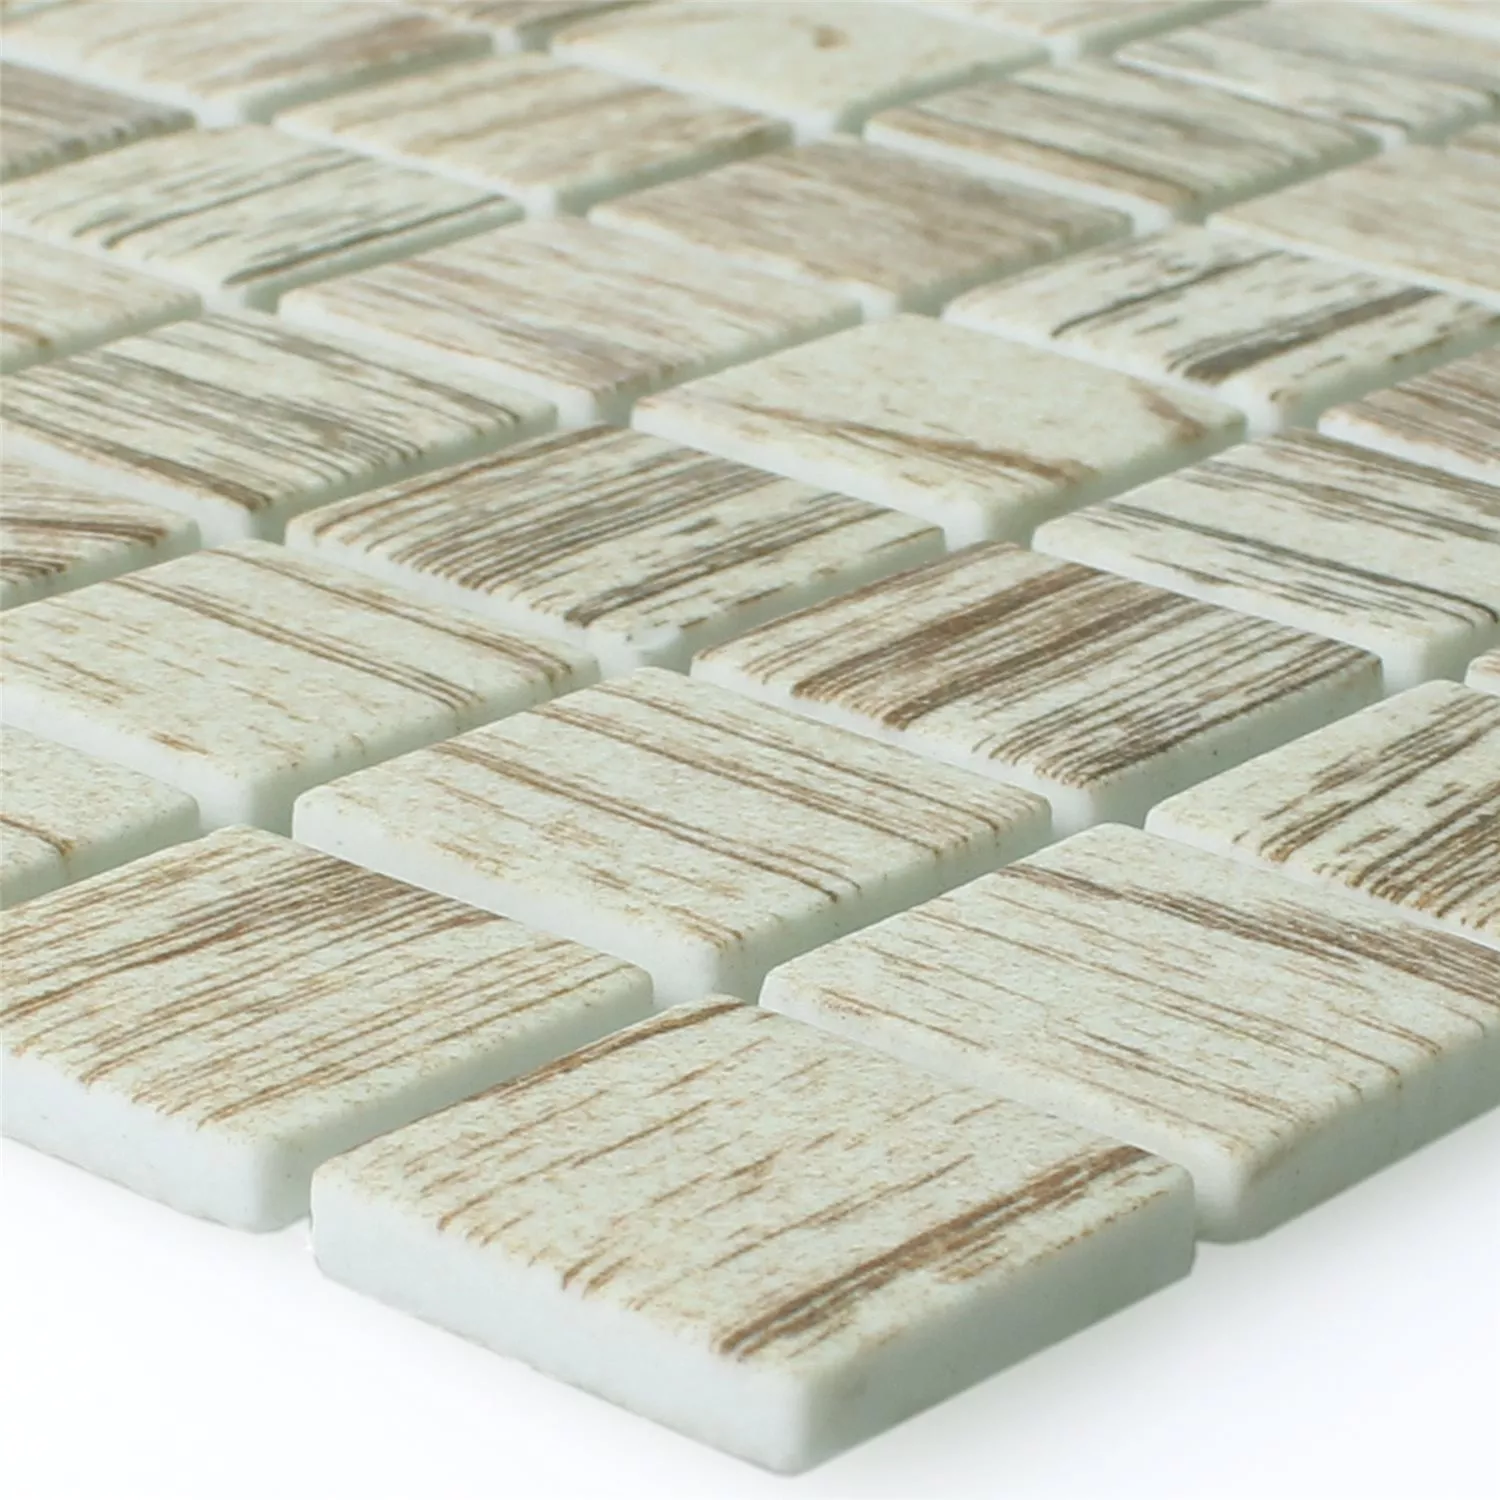 Mosaic Tiles Glass Valetta Wood Structure Light Beige